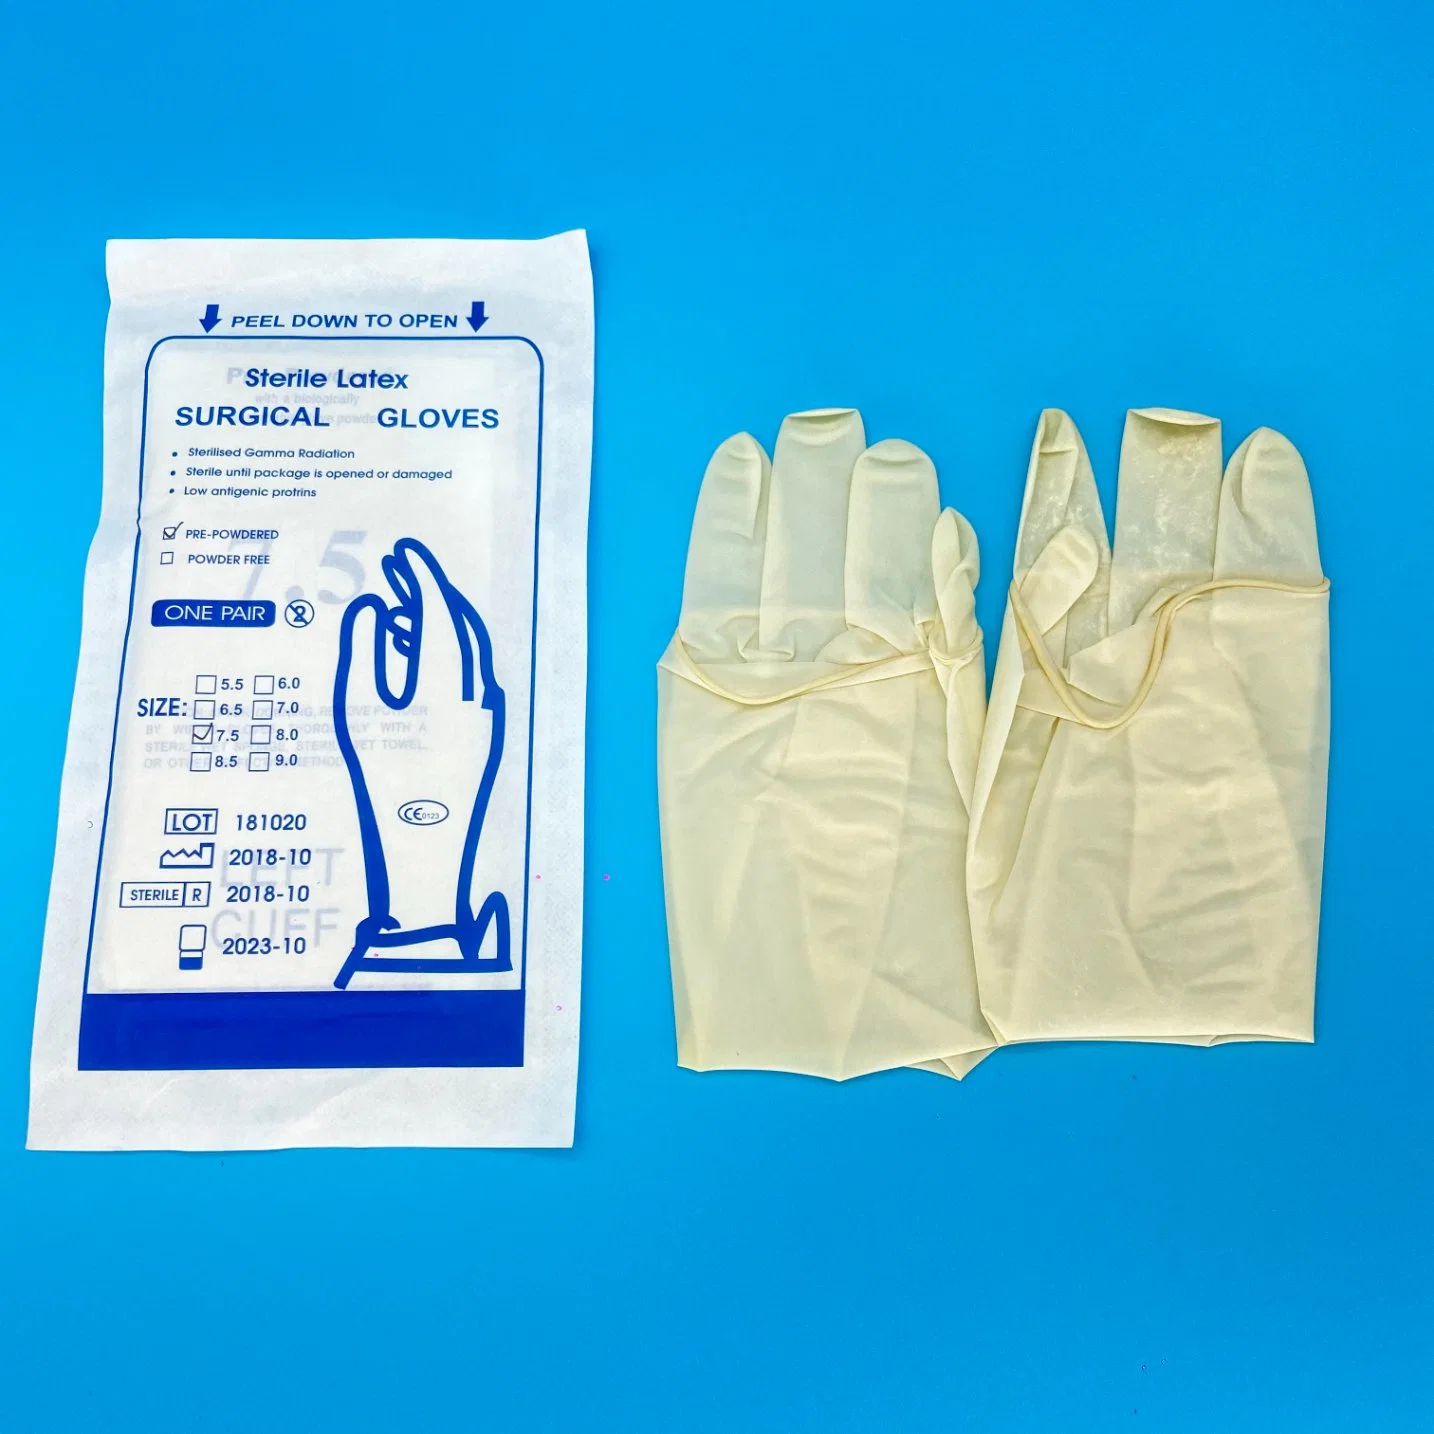 Venta en caliente uso en polvo y sin polvo estéril látex quirúrgico Glovees